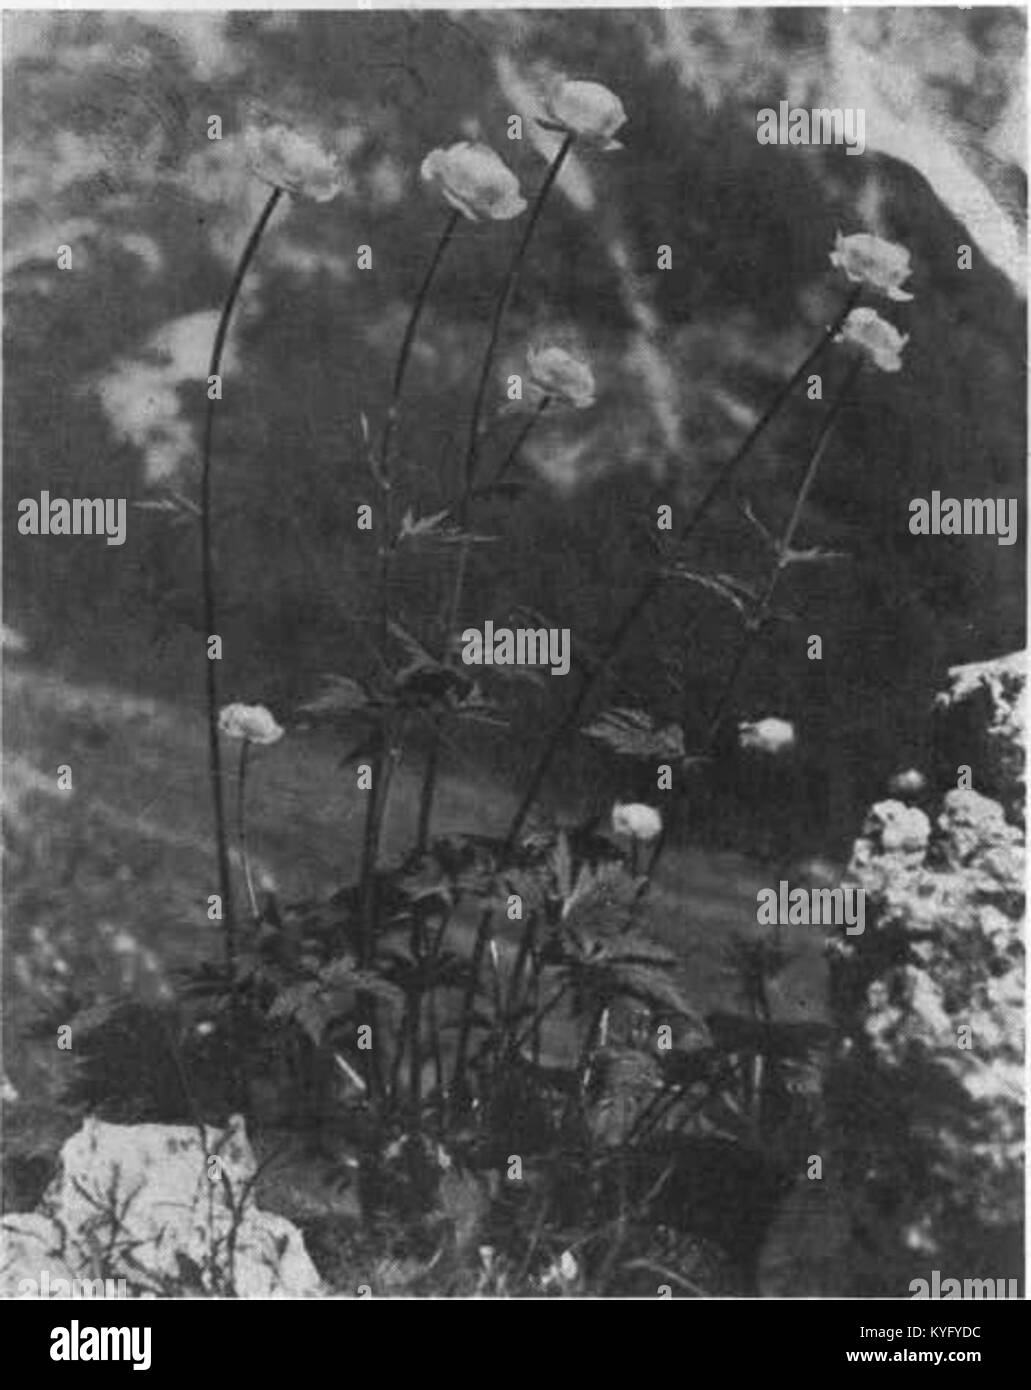 Pogačica ali kraguljčki (Trollius europaeus L.) pod Frischaufovim domom na Okrešlju 1939 Stock Photo